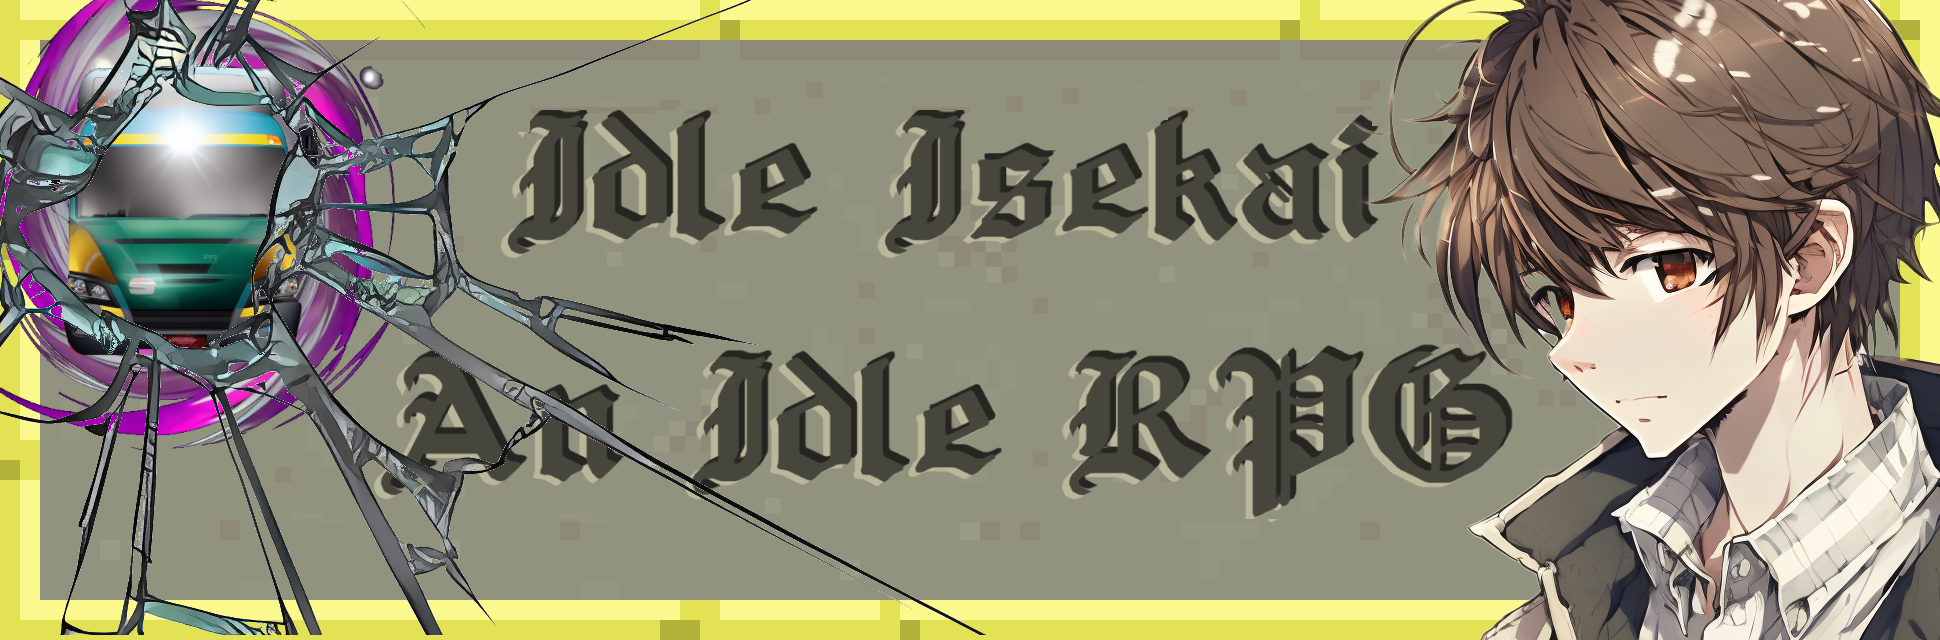 Idle Isekai - An idle RPG